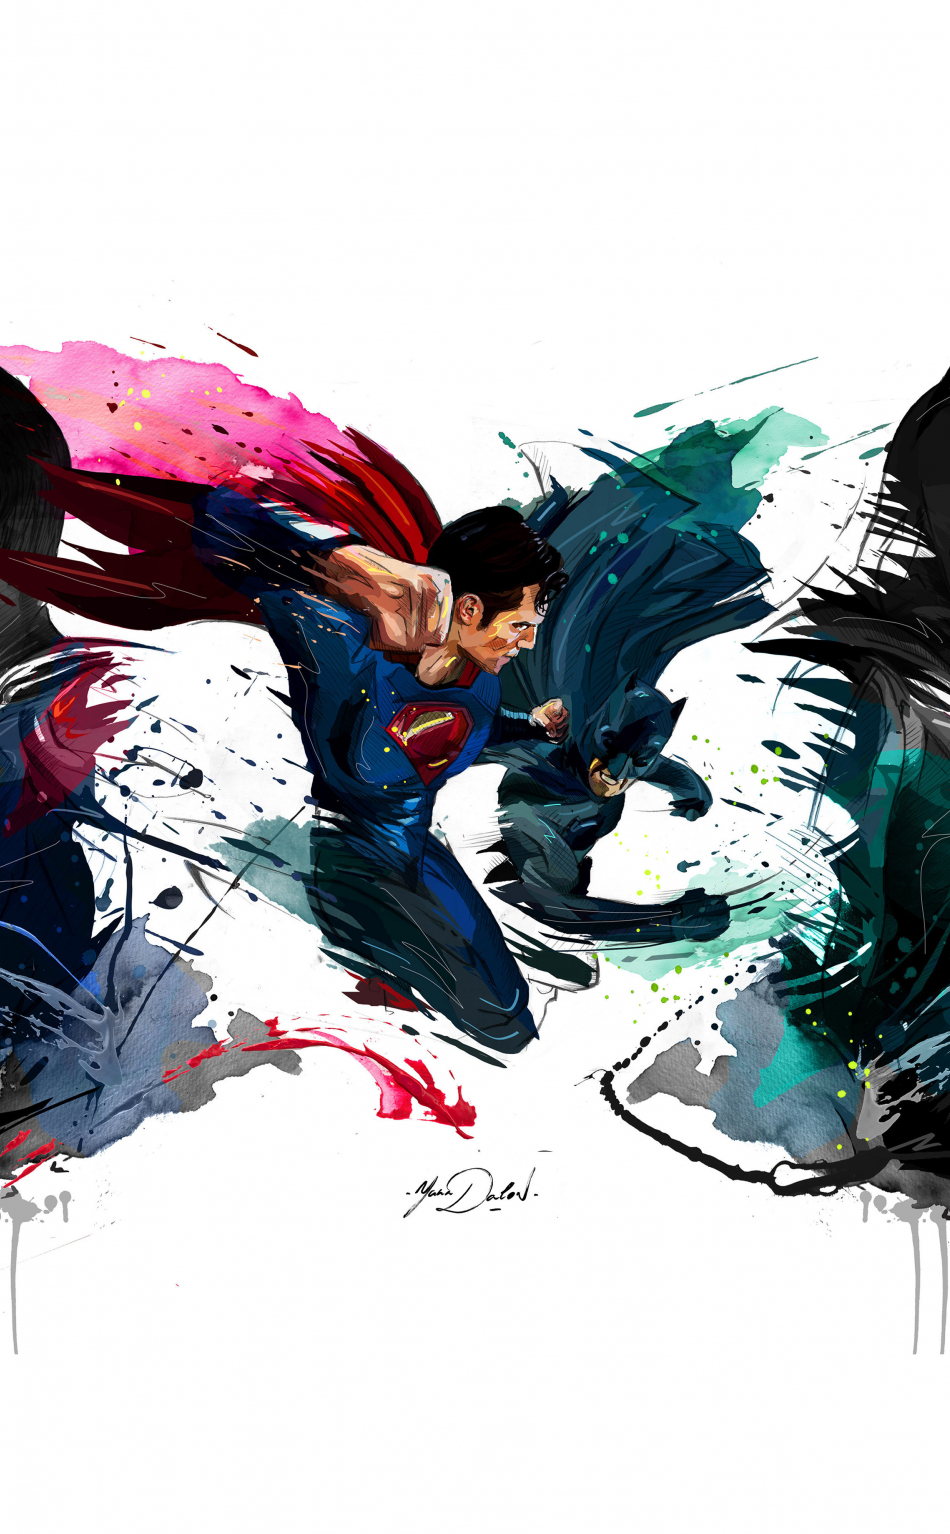 Batman vs superman, 4k, sketch artwork, 950x1534 wallpaper